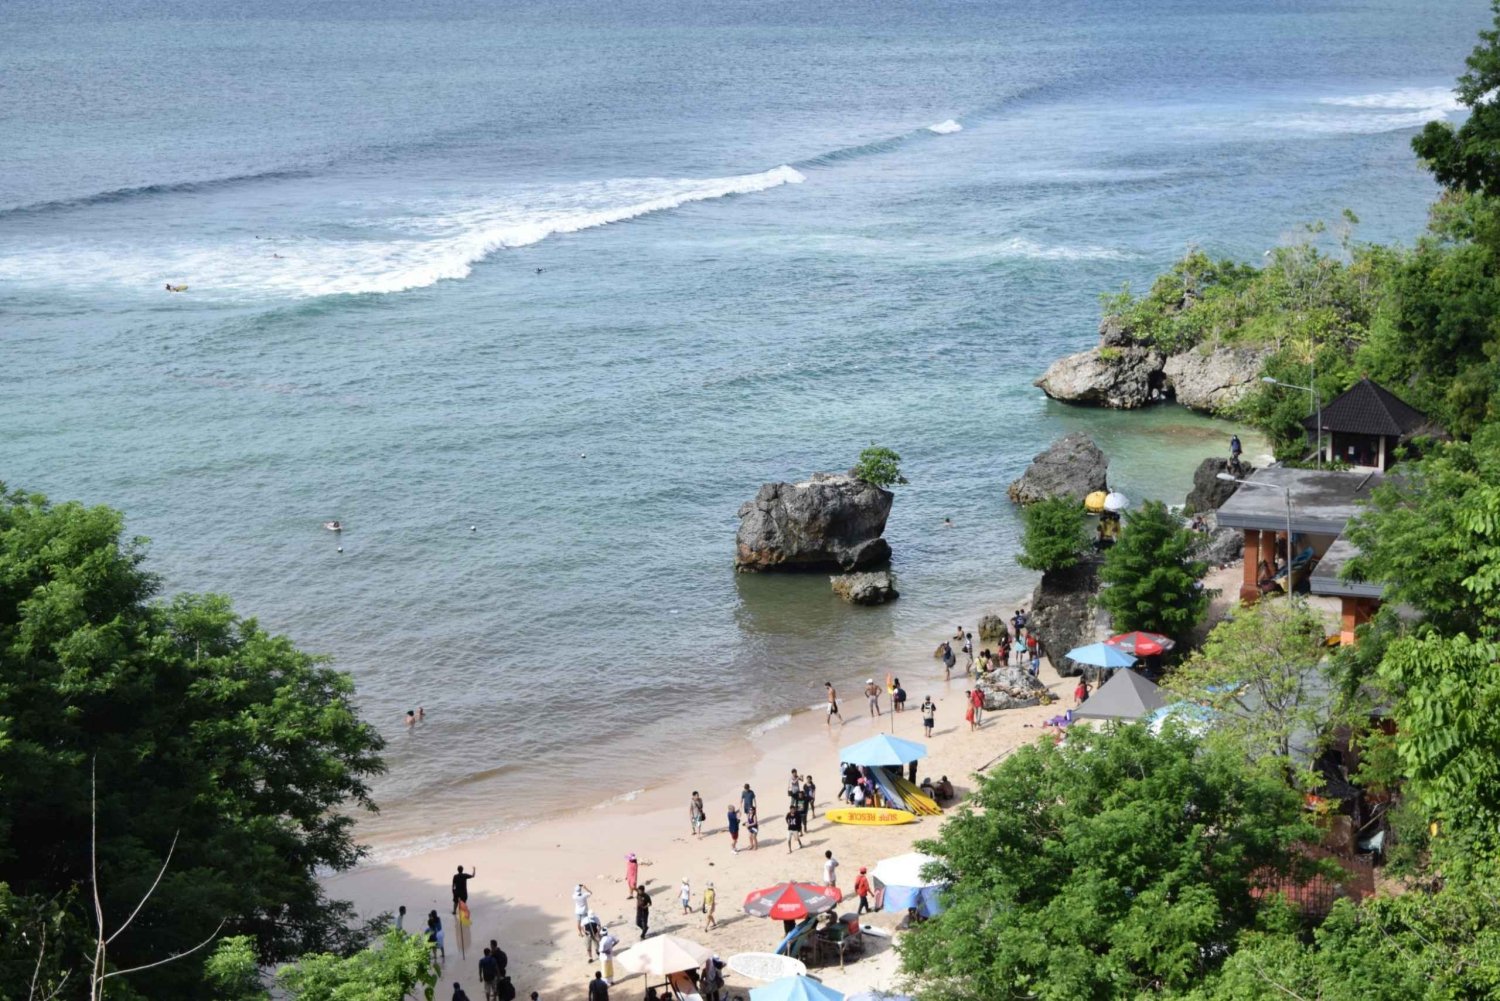 Bali: South Coast Uluwatu, Tanah Lot, and Jimbaran Day Trip